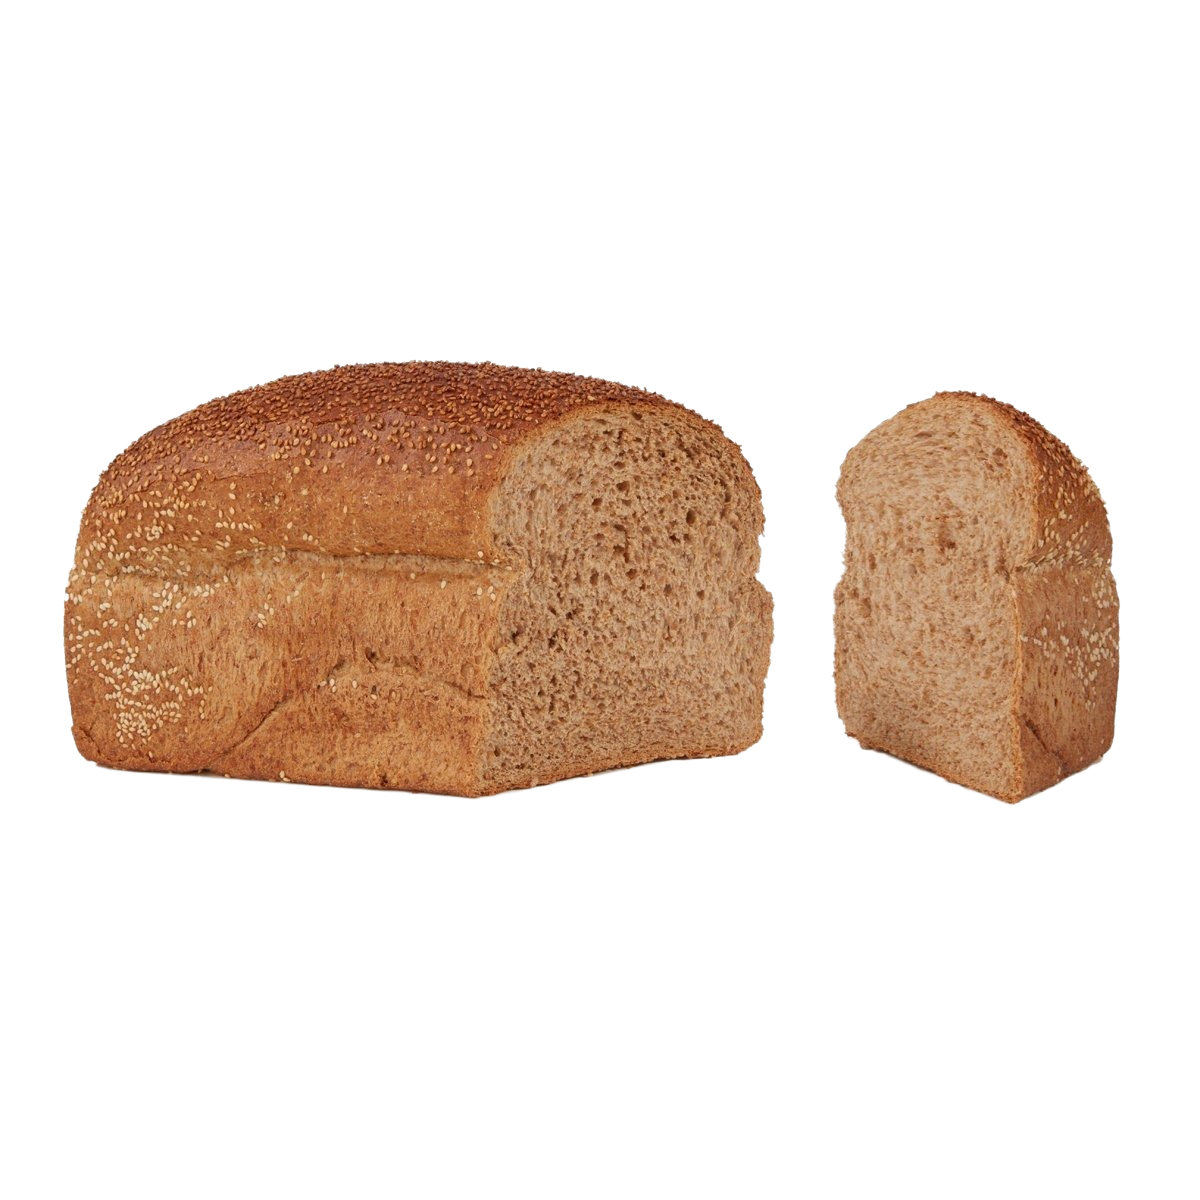 Sesamvolkoren brood